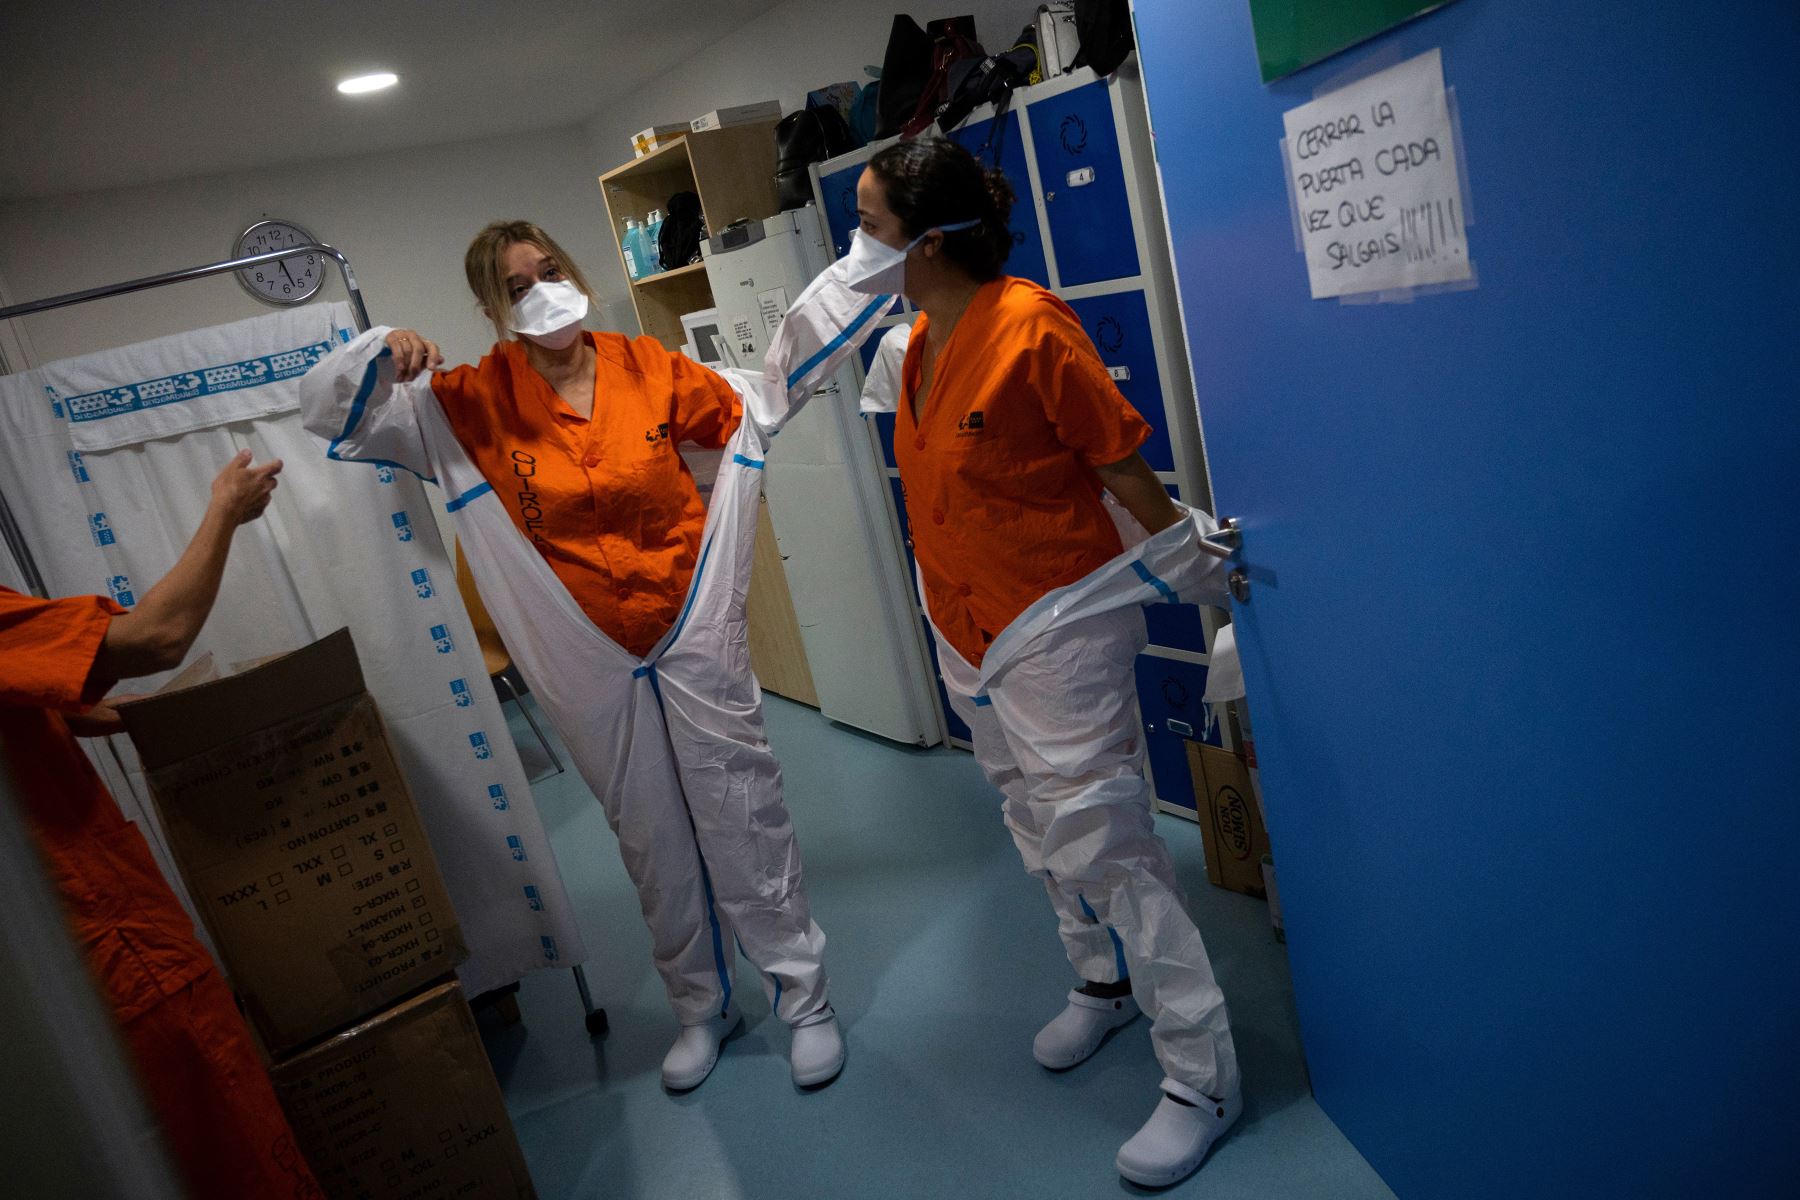 Los trabajadores sanitarios se colocan los trajes de protección antes de atender a los pacientes con coronavirus en la Unidad de Cuidados Intensivos (UCI) del Hospital Universitario Severo Ochoa de Leganés, en Madrid. Foto: AFP